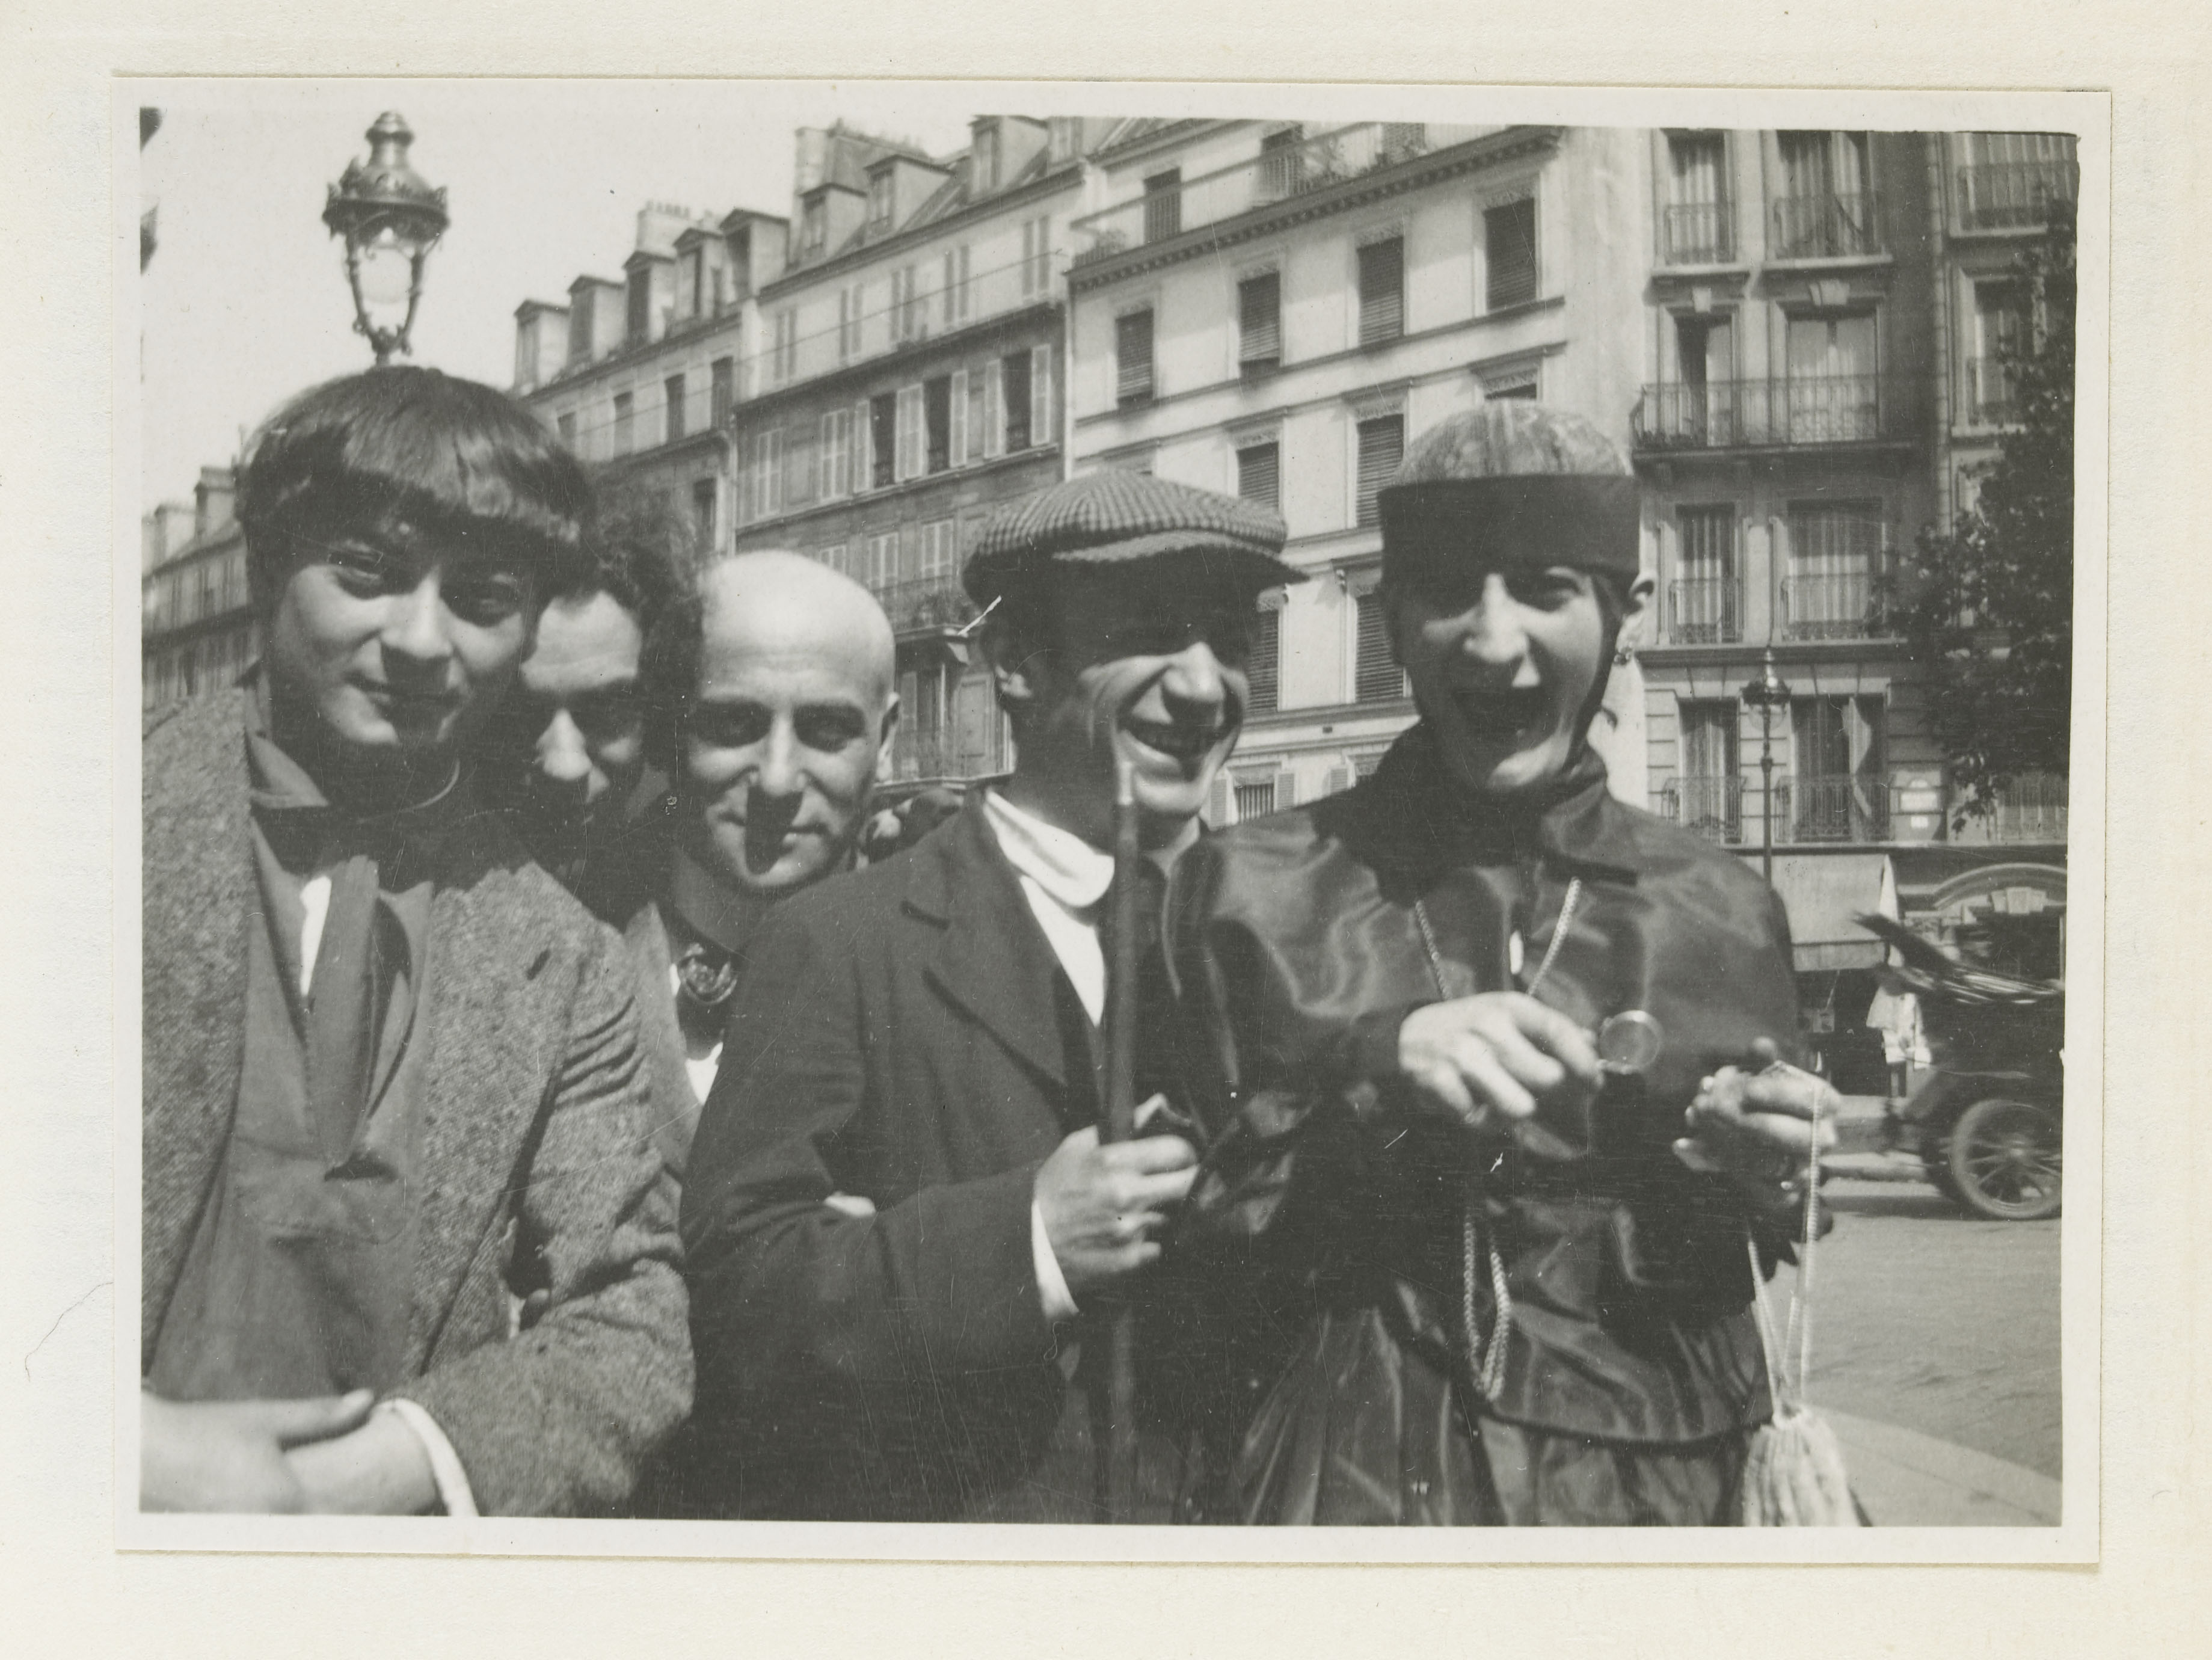 Jean Cocteau - Tirage interfolié dans le livre de Max Jacob "Le cornet à dés" - MP2003-15;fol108A - 04-005413 